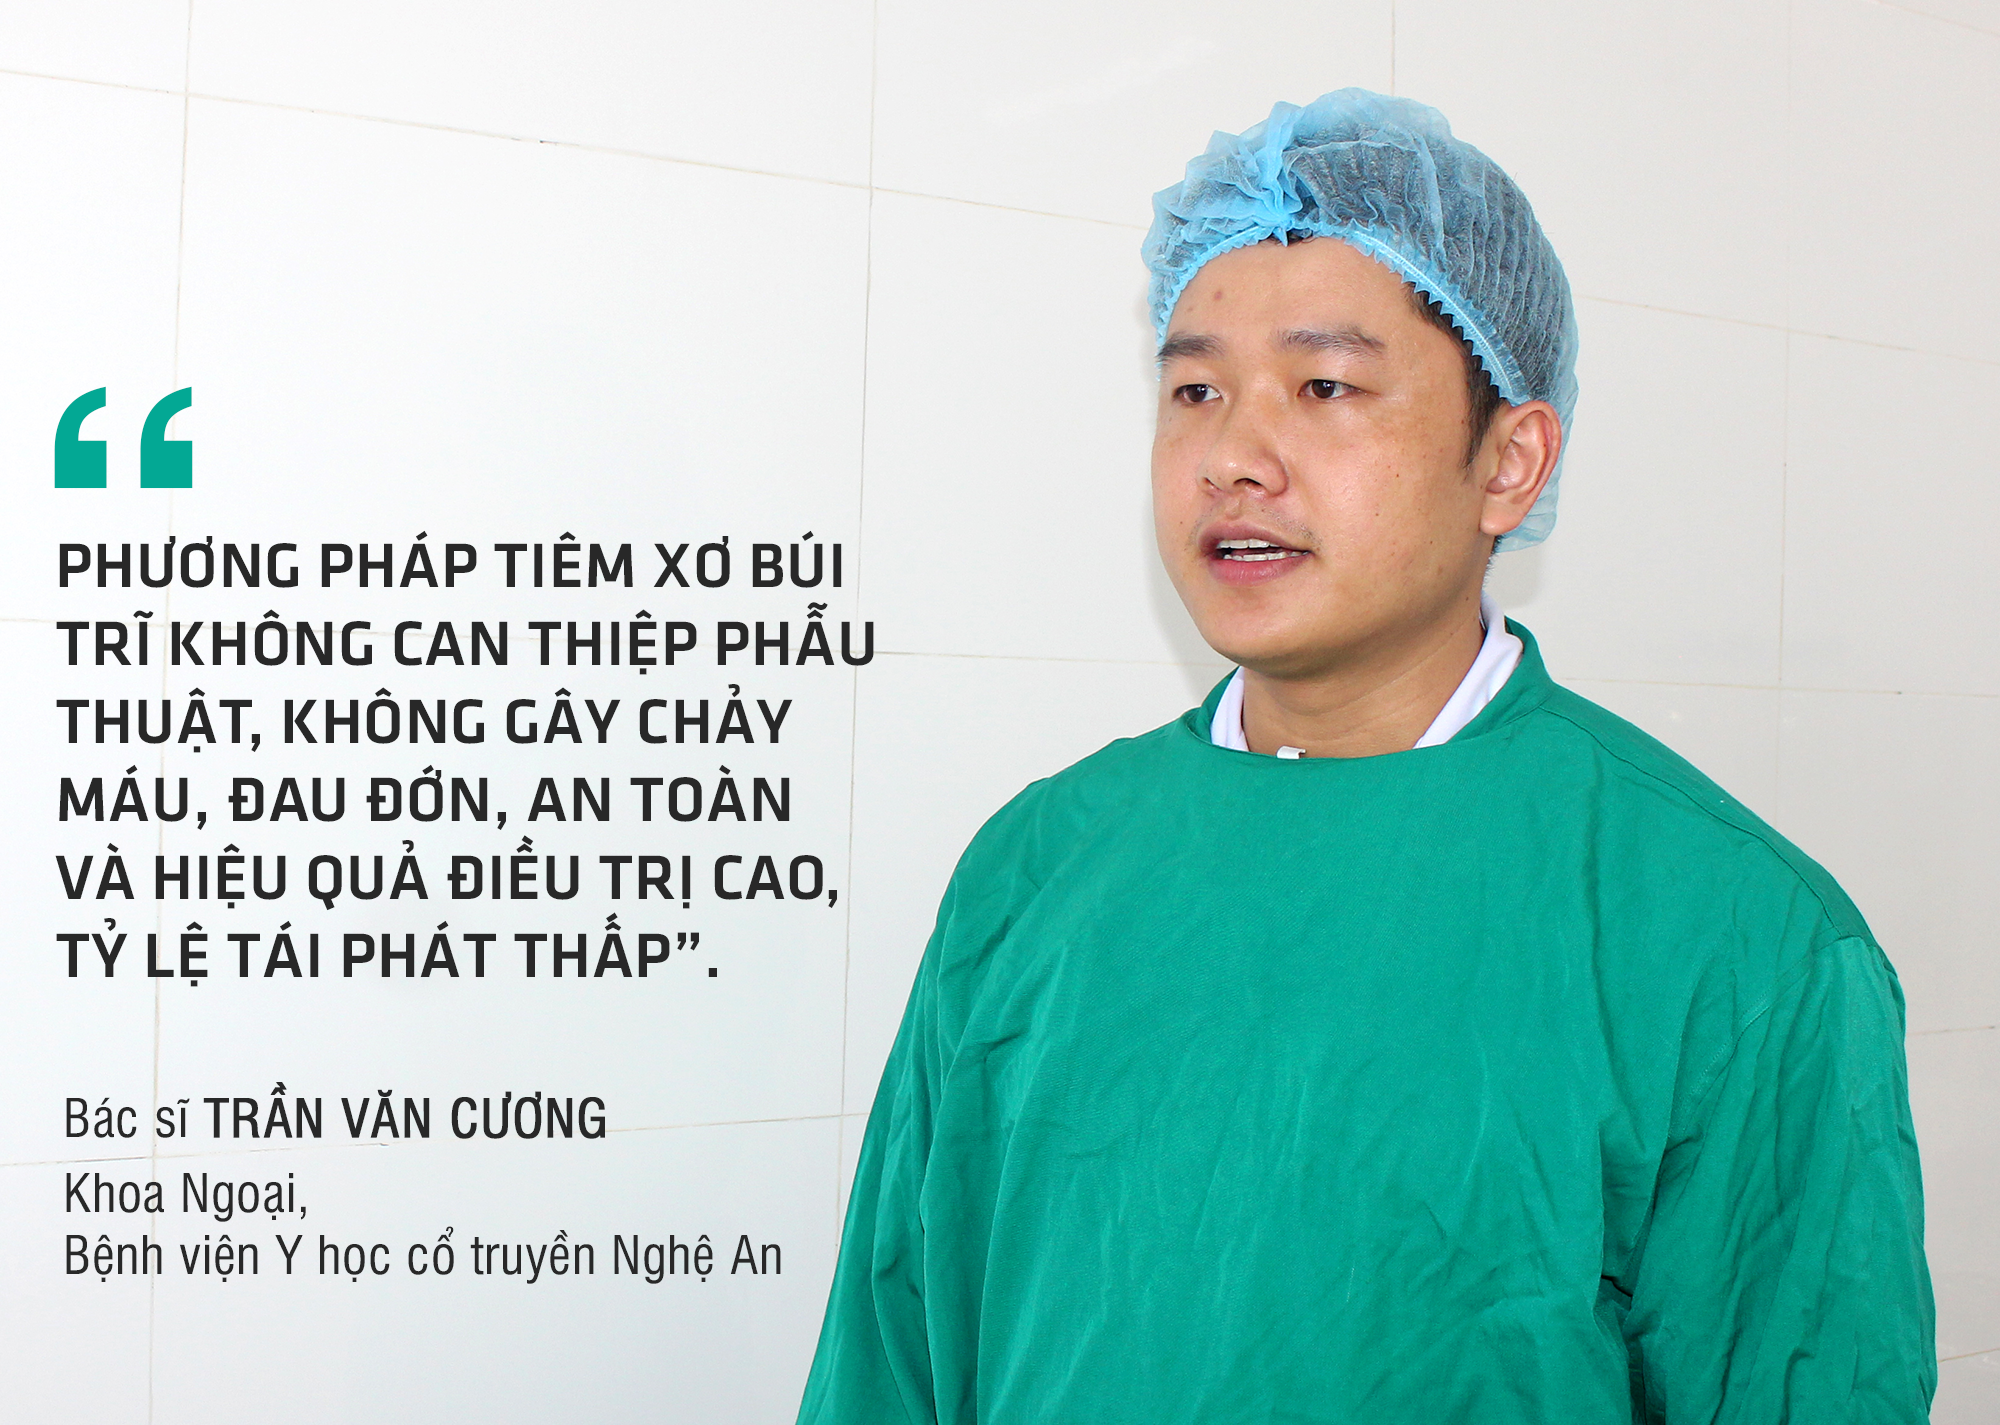 Bác sĩ Trần Văn Cương - Quoter